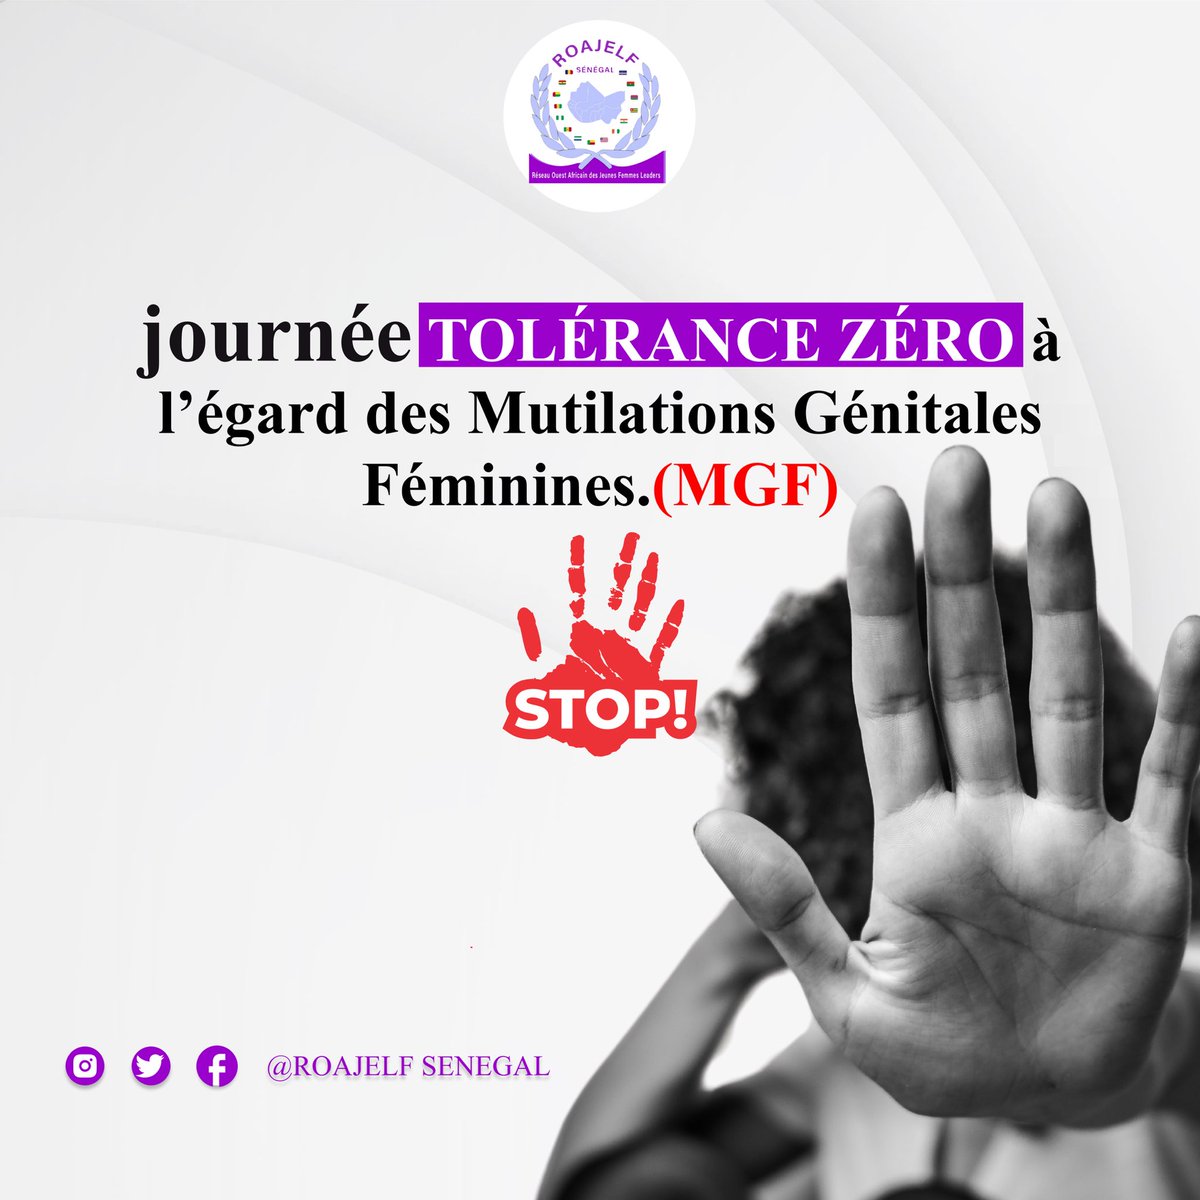 Des millions de #filles continuent à subir les #MGF dans le monde. En cette journée internationale, continuons notre mobilisation pour barrer la lutte à cette pratique néfaste au #Senegal ! @Tostan @PasneegI @DVulnerables #kebetu